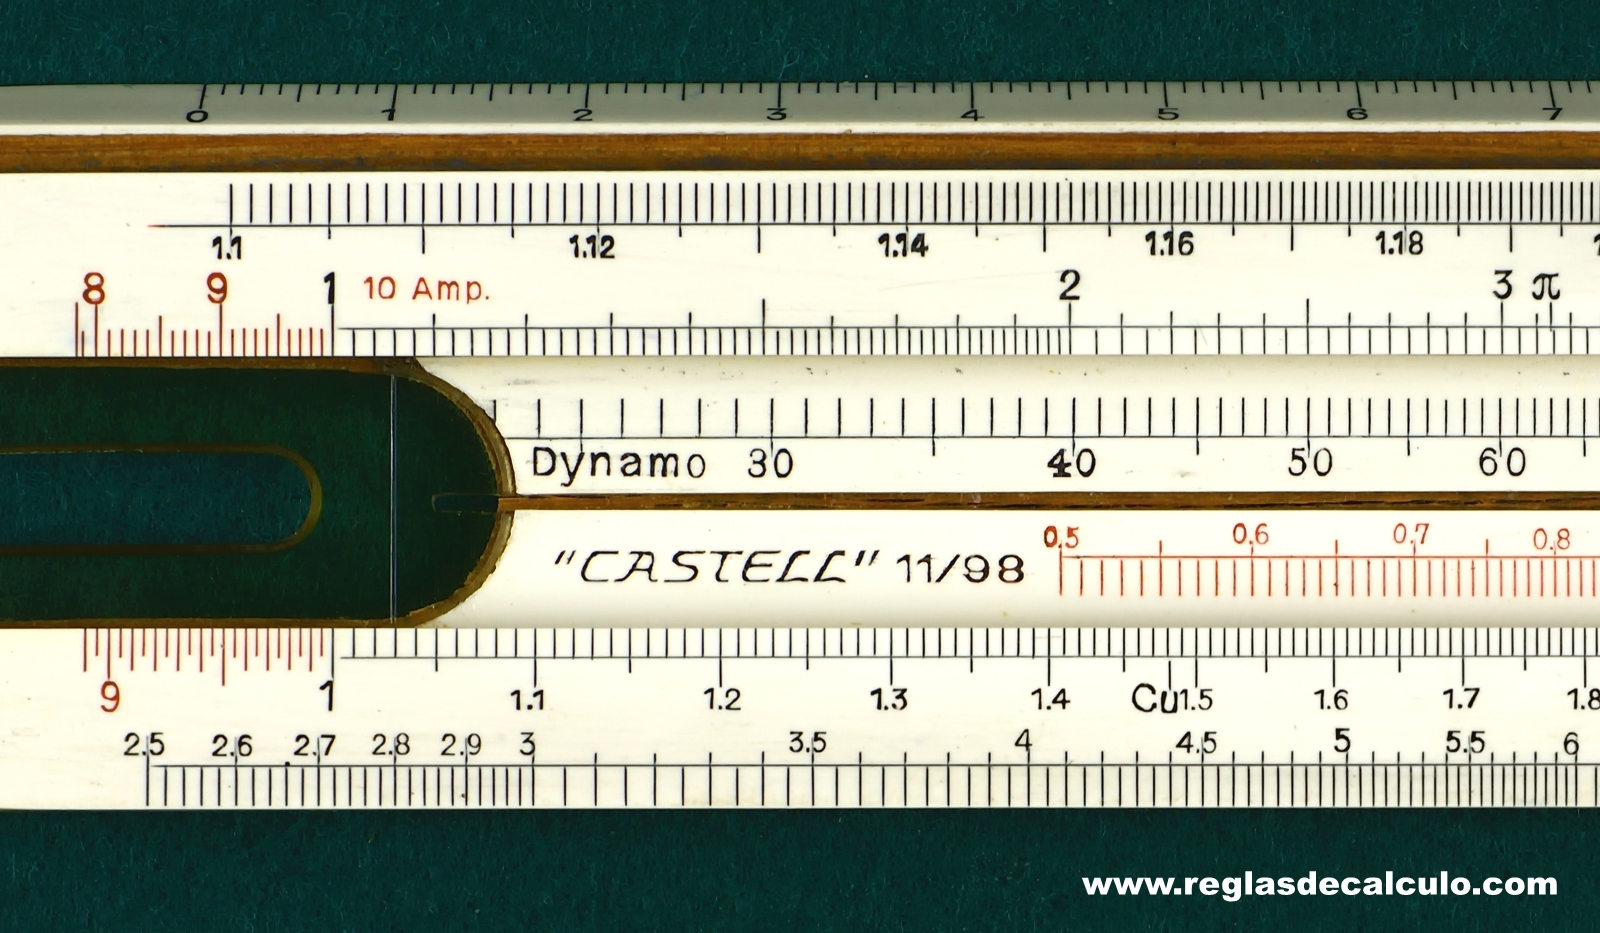 Faber Castell 11/98 Electro Regla de Calculo Slide Rule